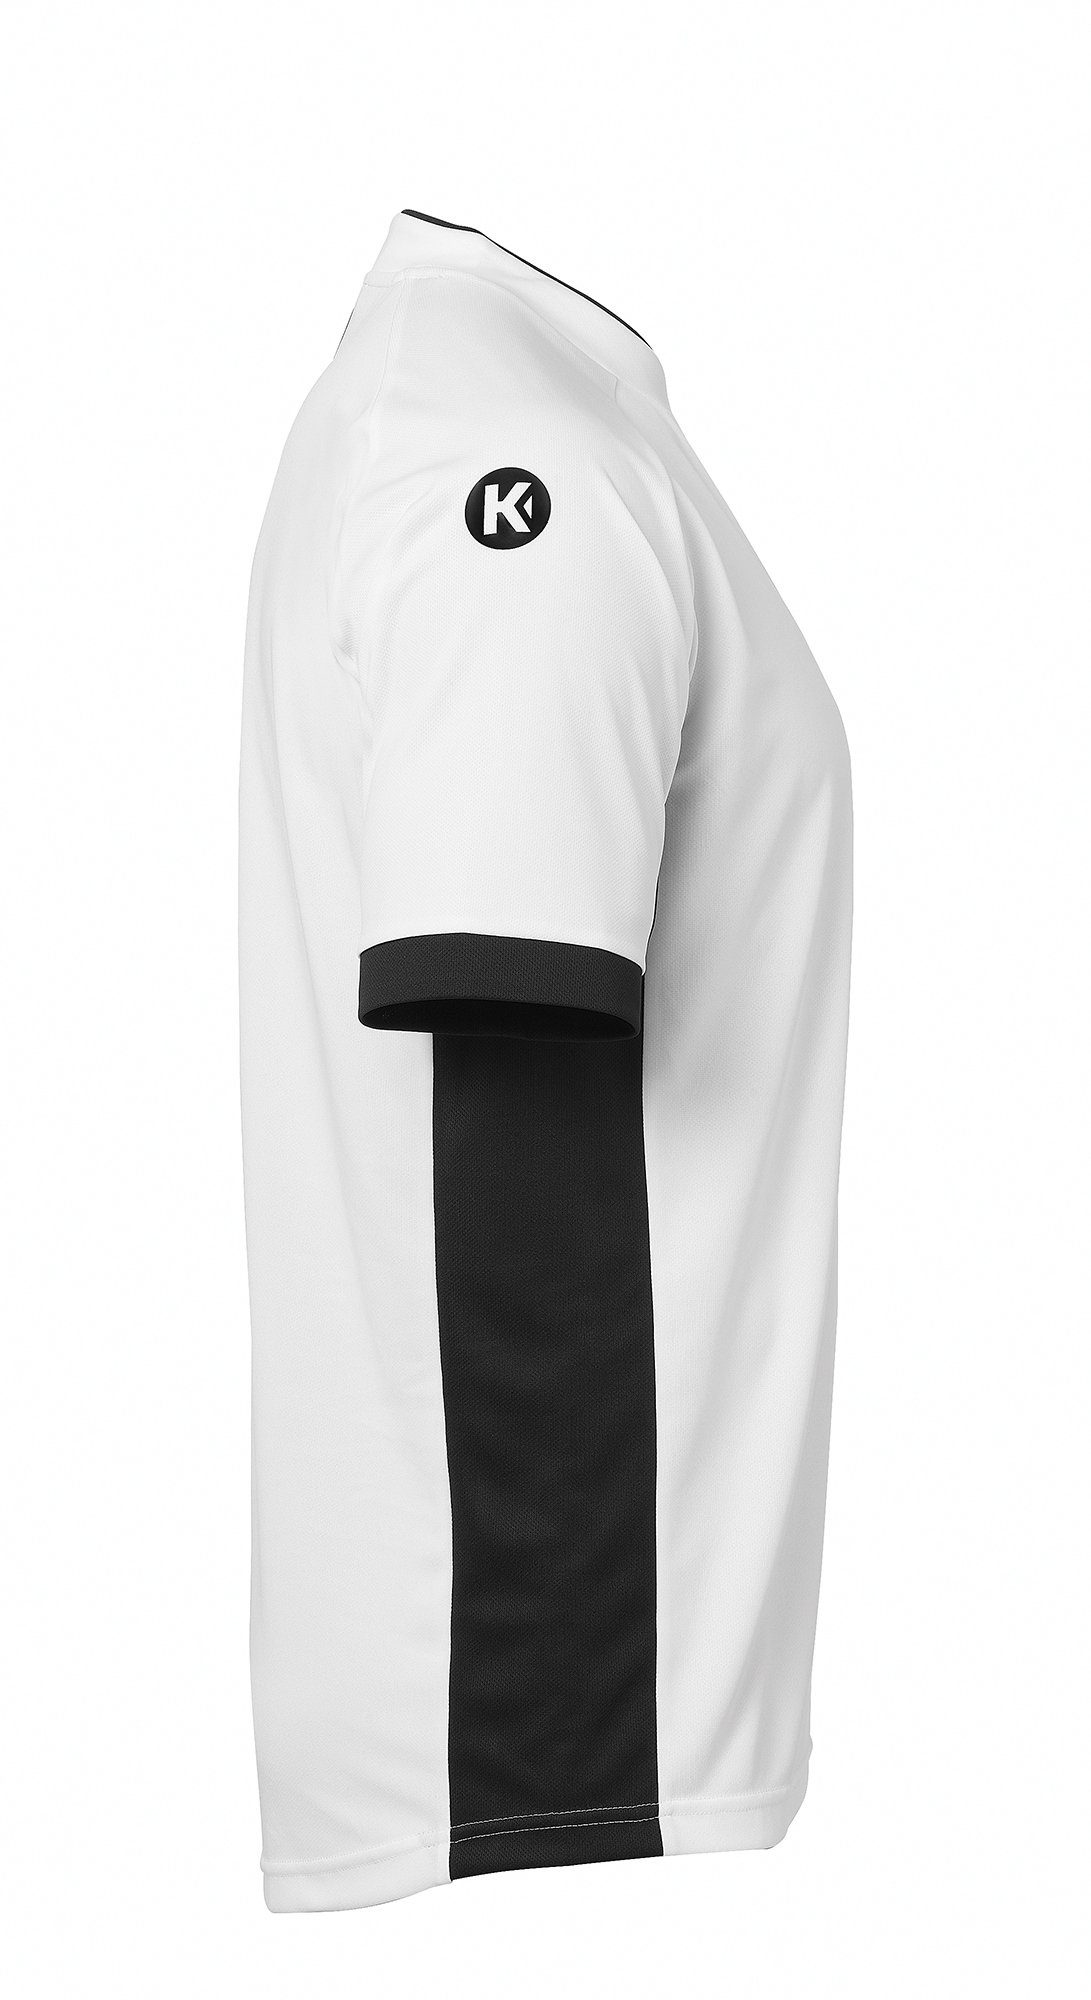 Kempa TRIKOT PRIME Shirt Kempa weiß/schwarz schnelltrocknend Trainingsshirt